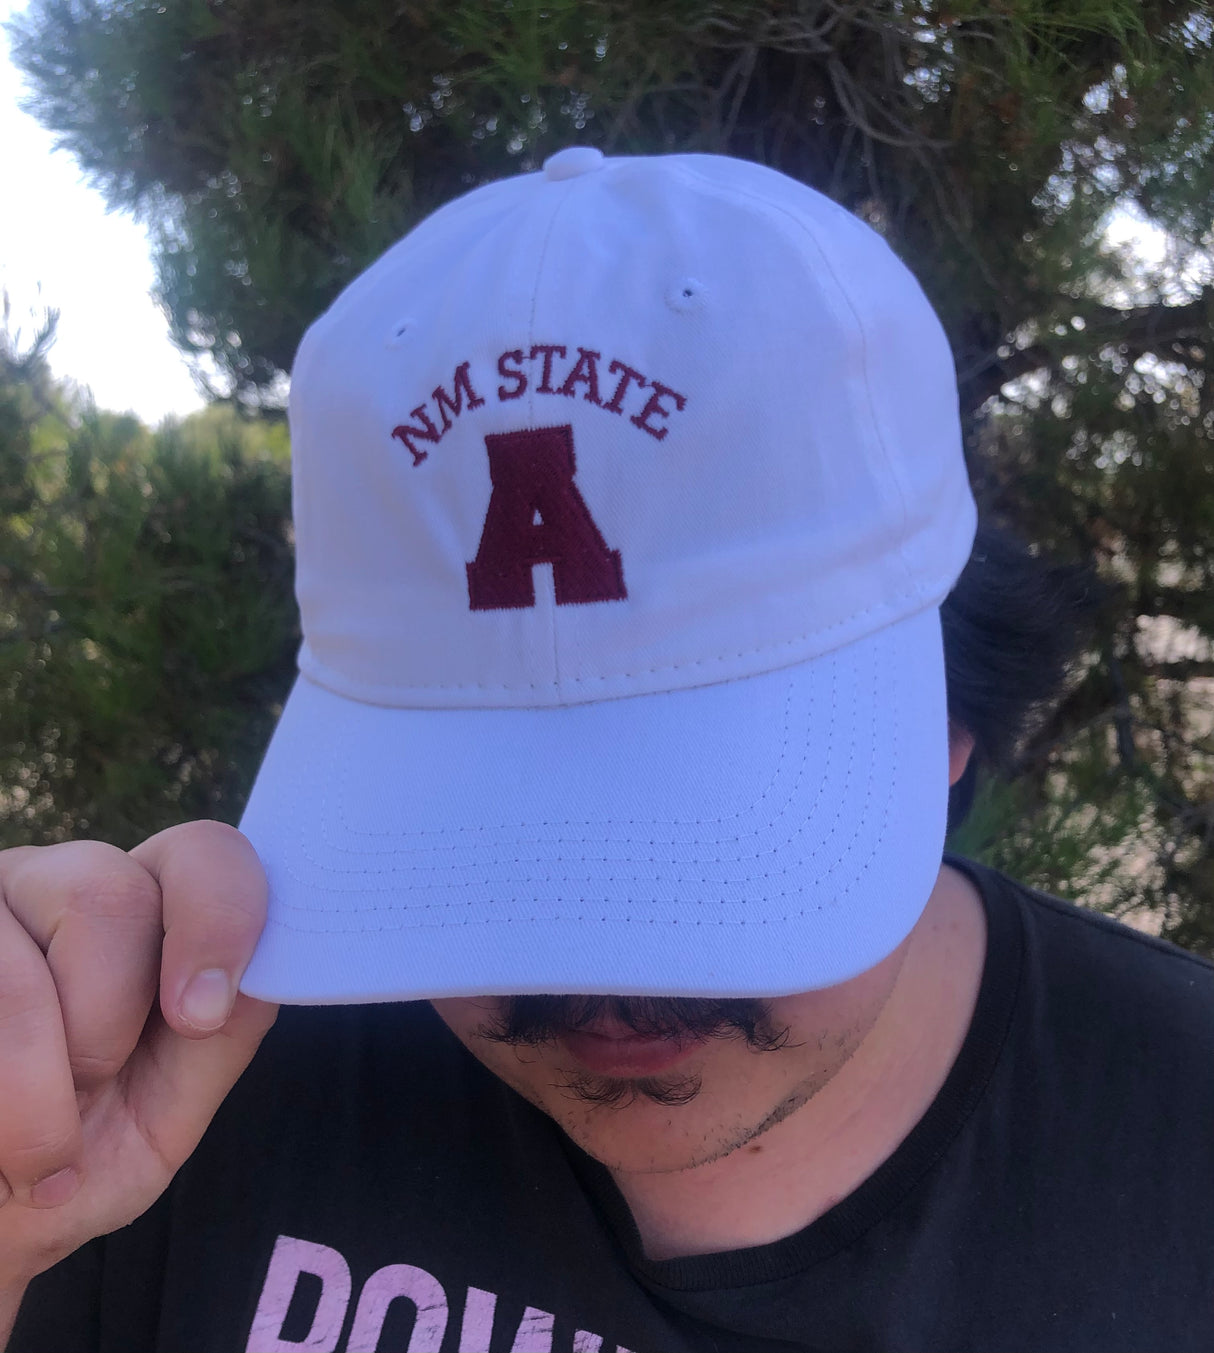 NM State "A" Dad Cap